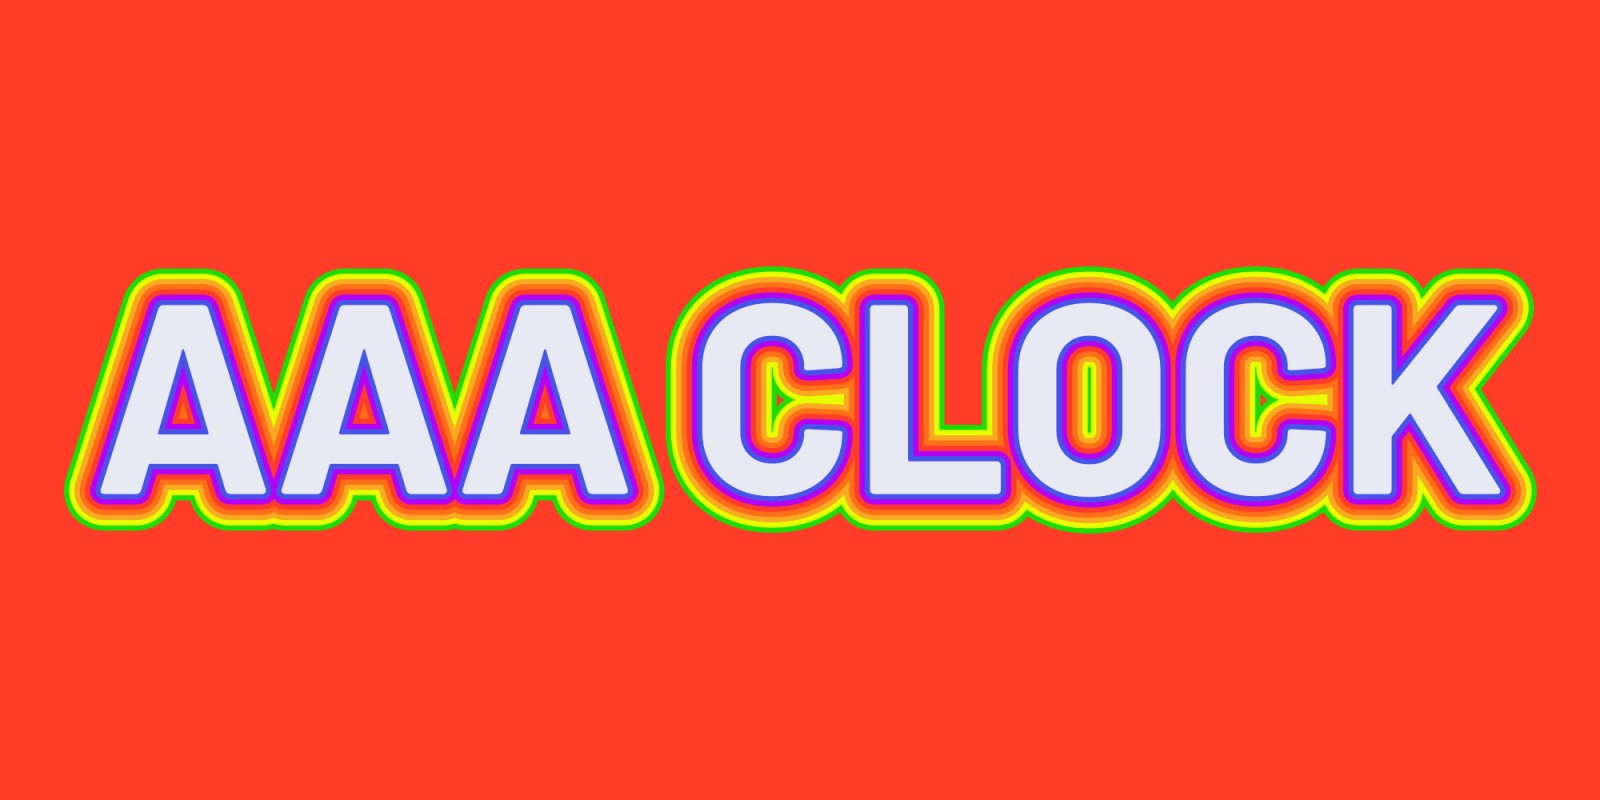 AAA Clock